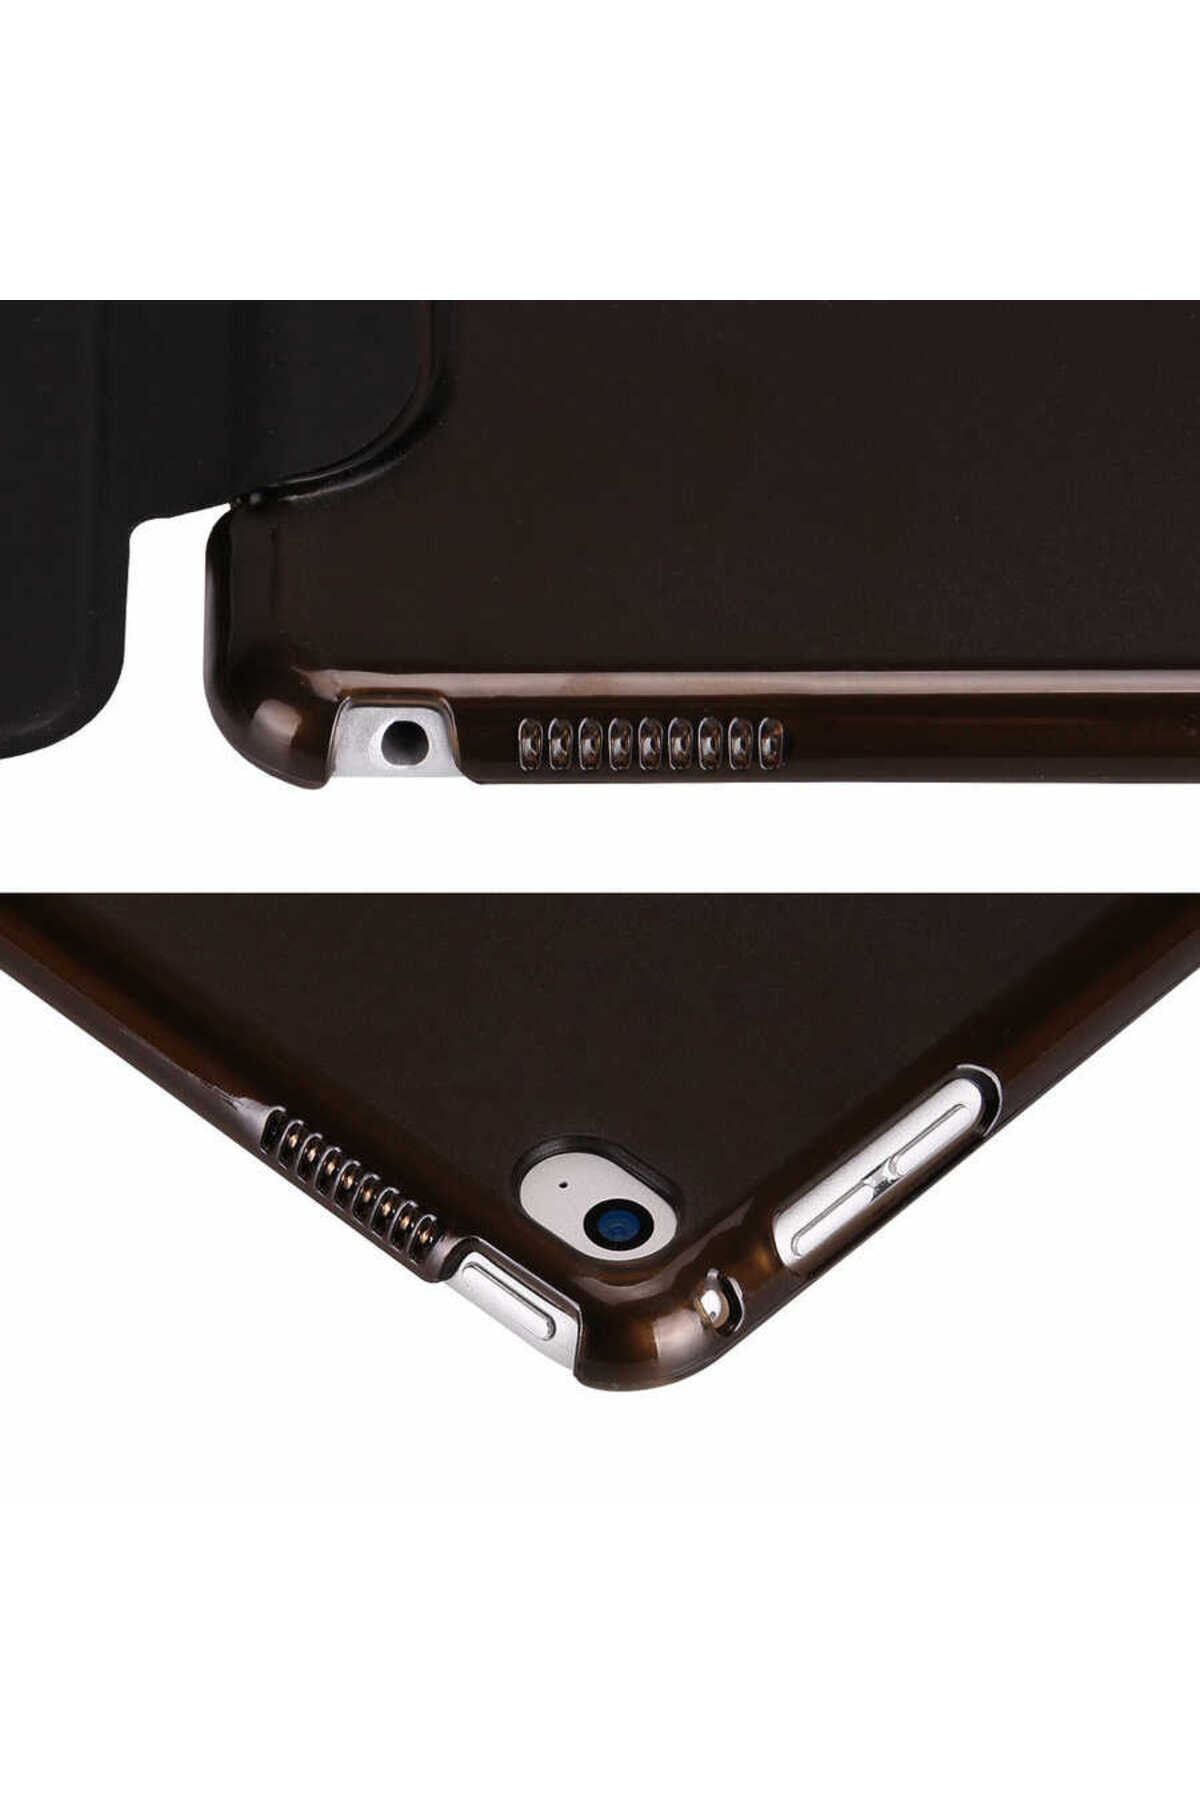 Gpack Samsung Galaxy Tab S2 8.0 T715 Kılıf Smart Cover Kapaklı Standlı sm11 + Nano + Kalem Mavi